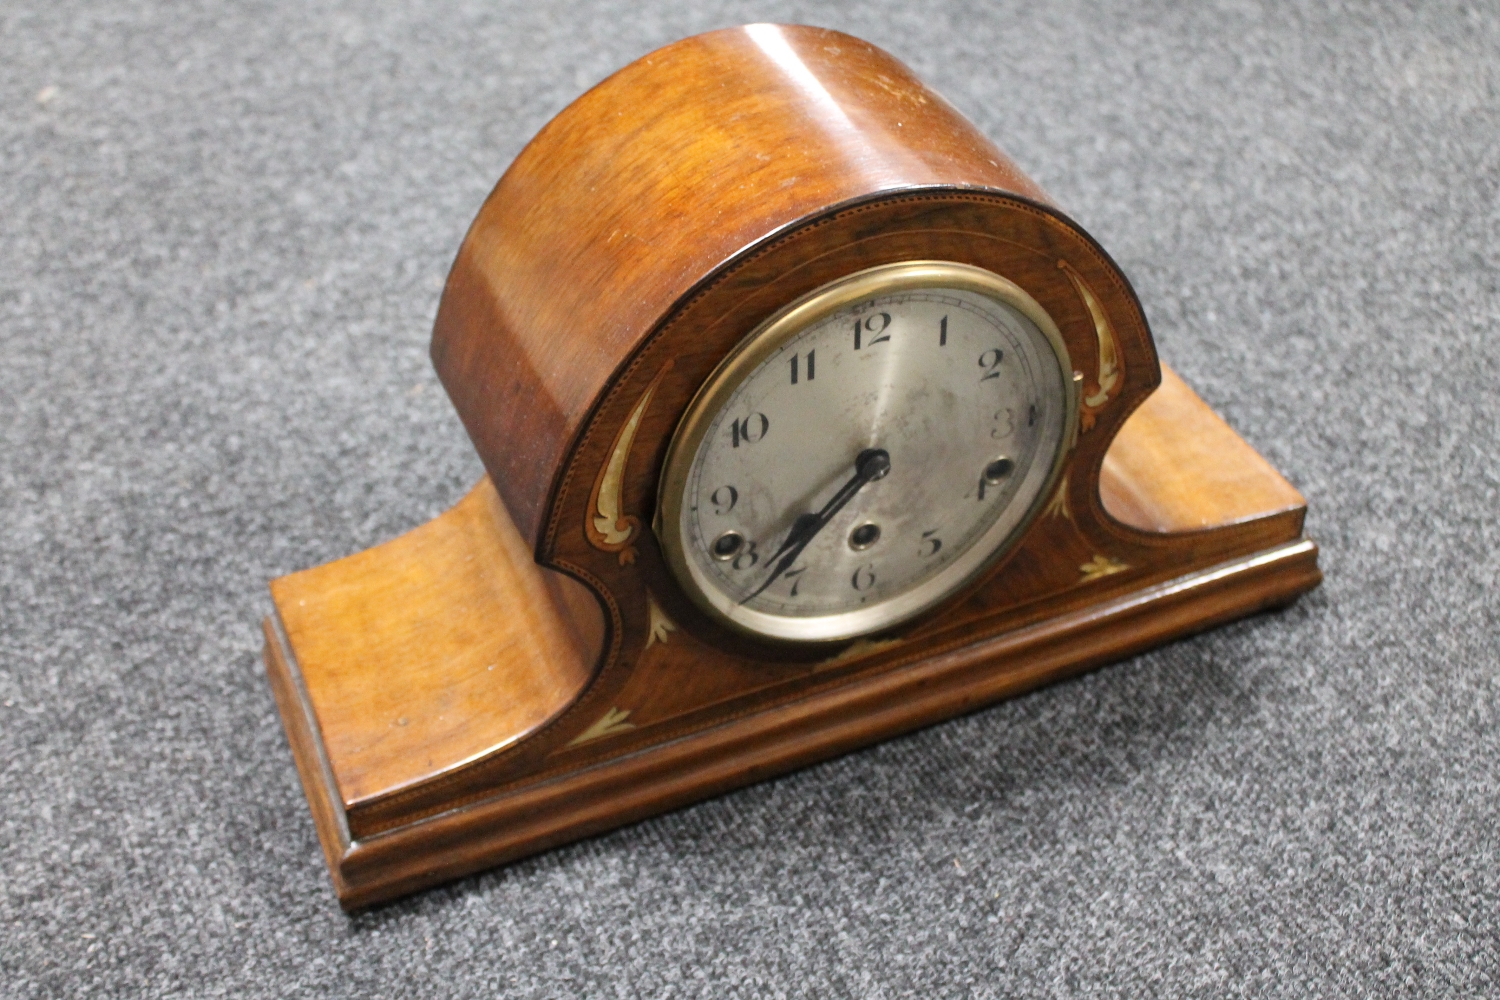 An inlaid mahogany mantel clock